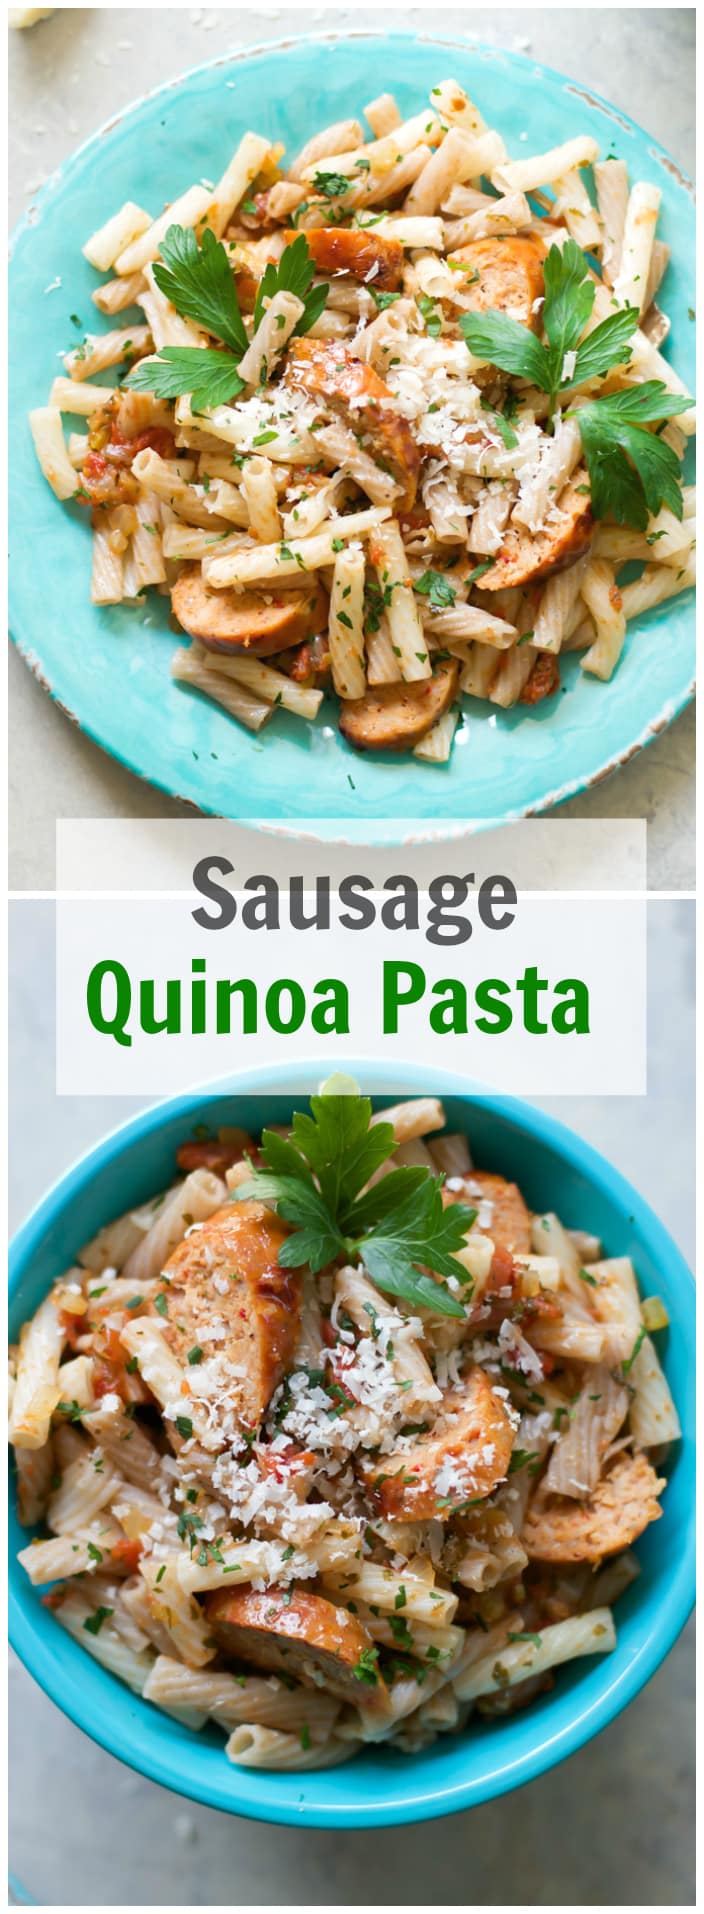 Sausage Quinoa Pasta